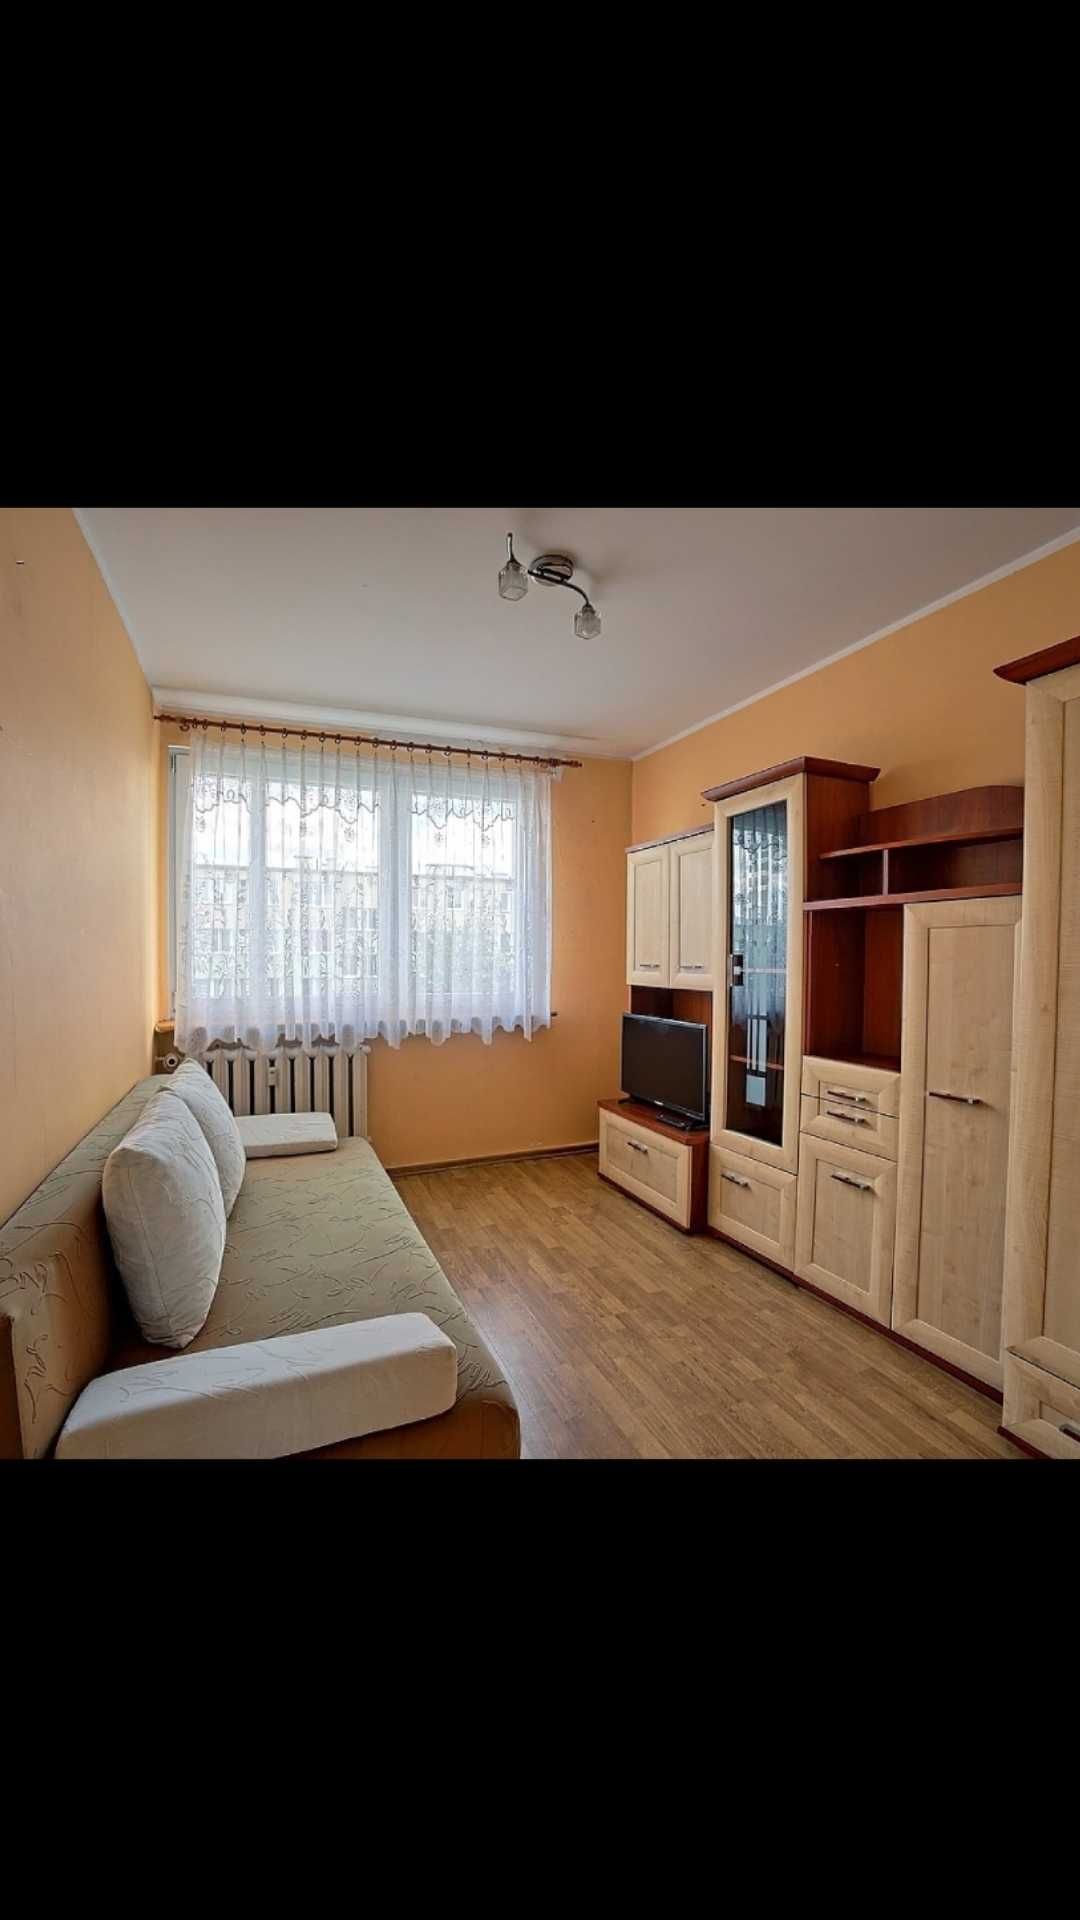 Mieszkanie 3 pokoje kuchnia, łazienka, WC Zabobrze ul. Karłowicza